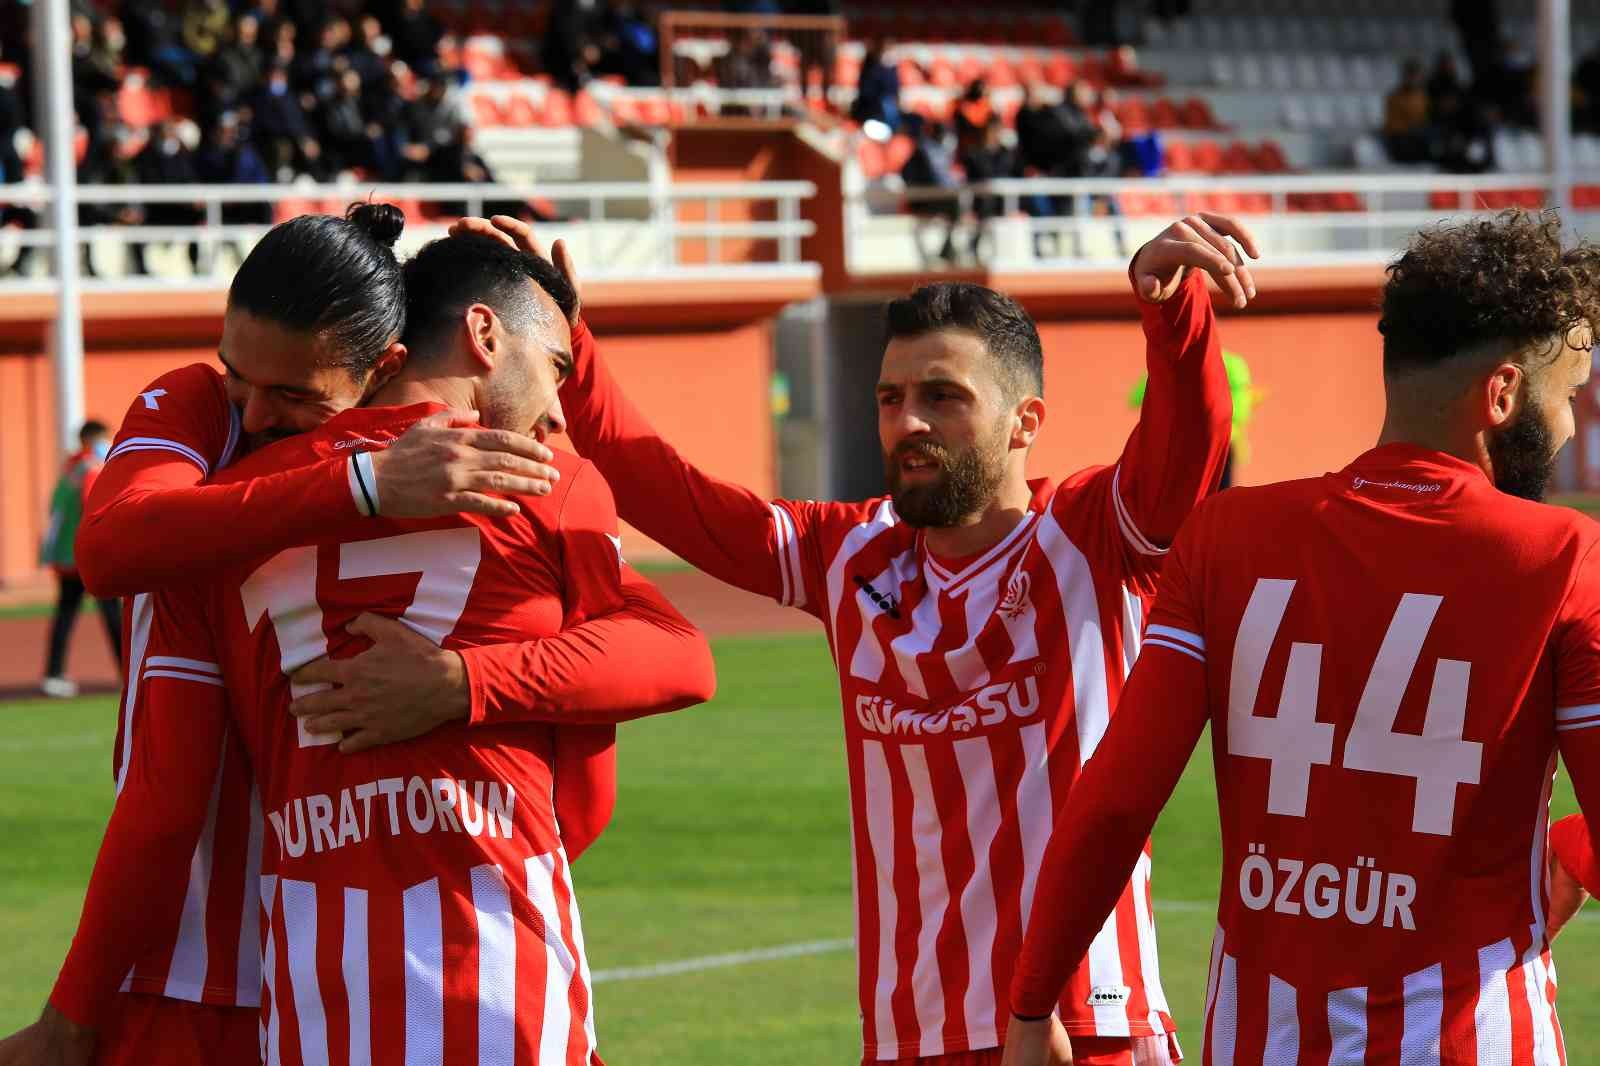 TFF 3. Lig: Gümüşhane Sportif Faaliyetler: 4 - Kardemir Karabükspor: 0 #gumushane